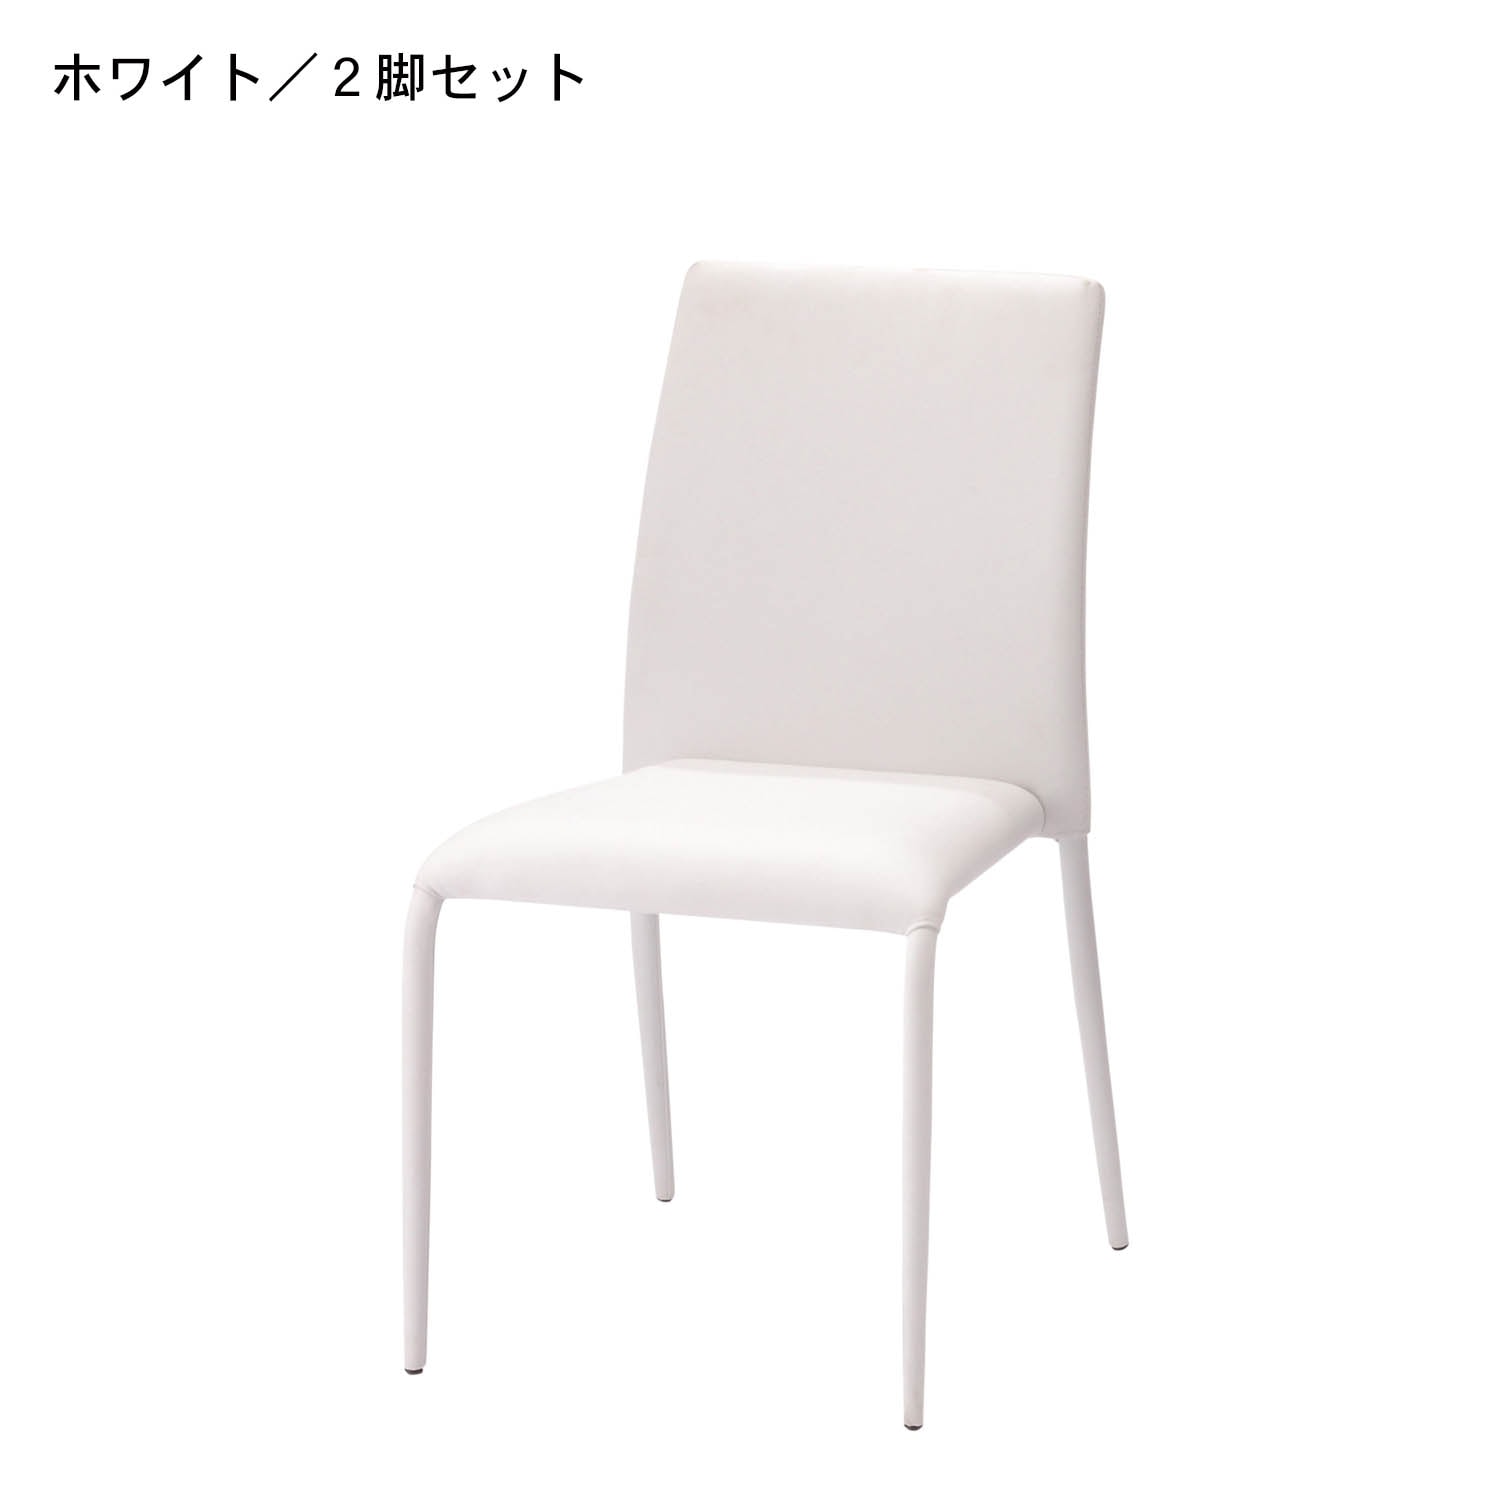 14000円激安購入 店舗 売れ筋格安 スタッキングチェア 2脚set 椅子